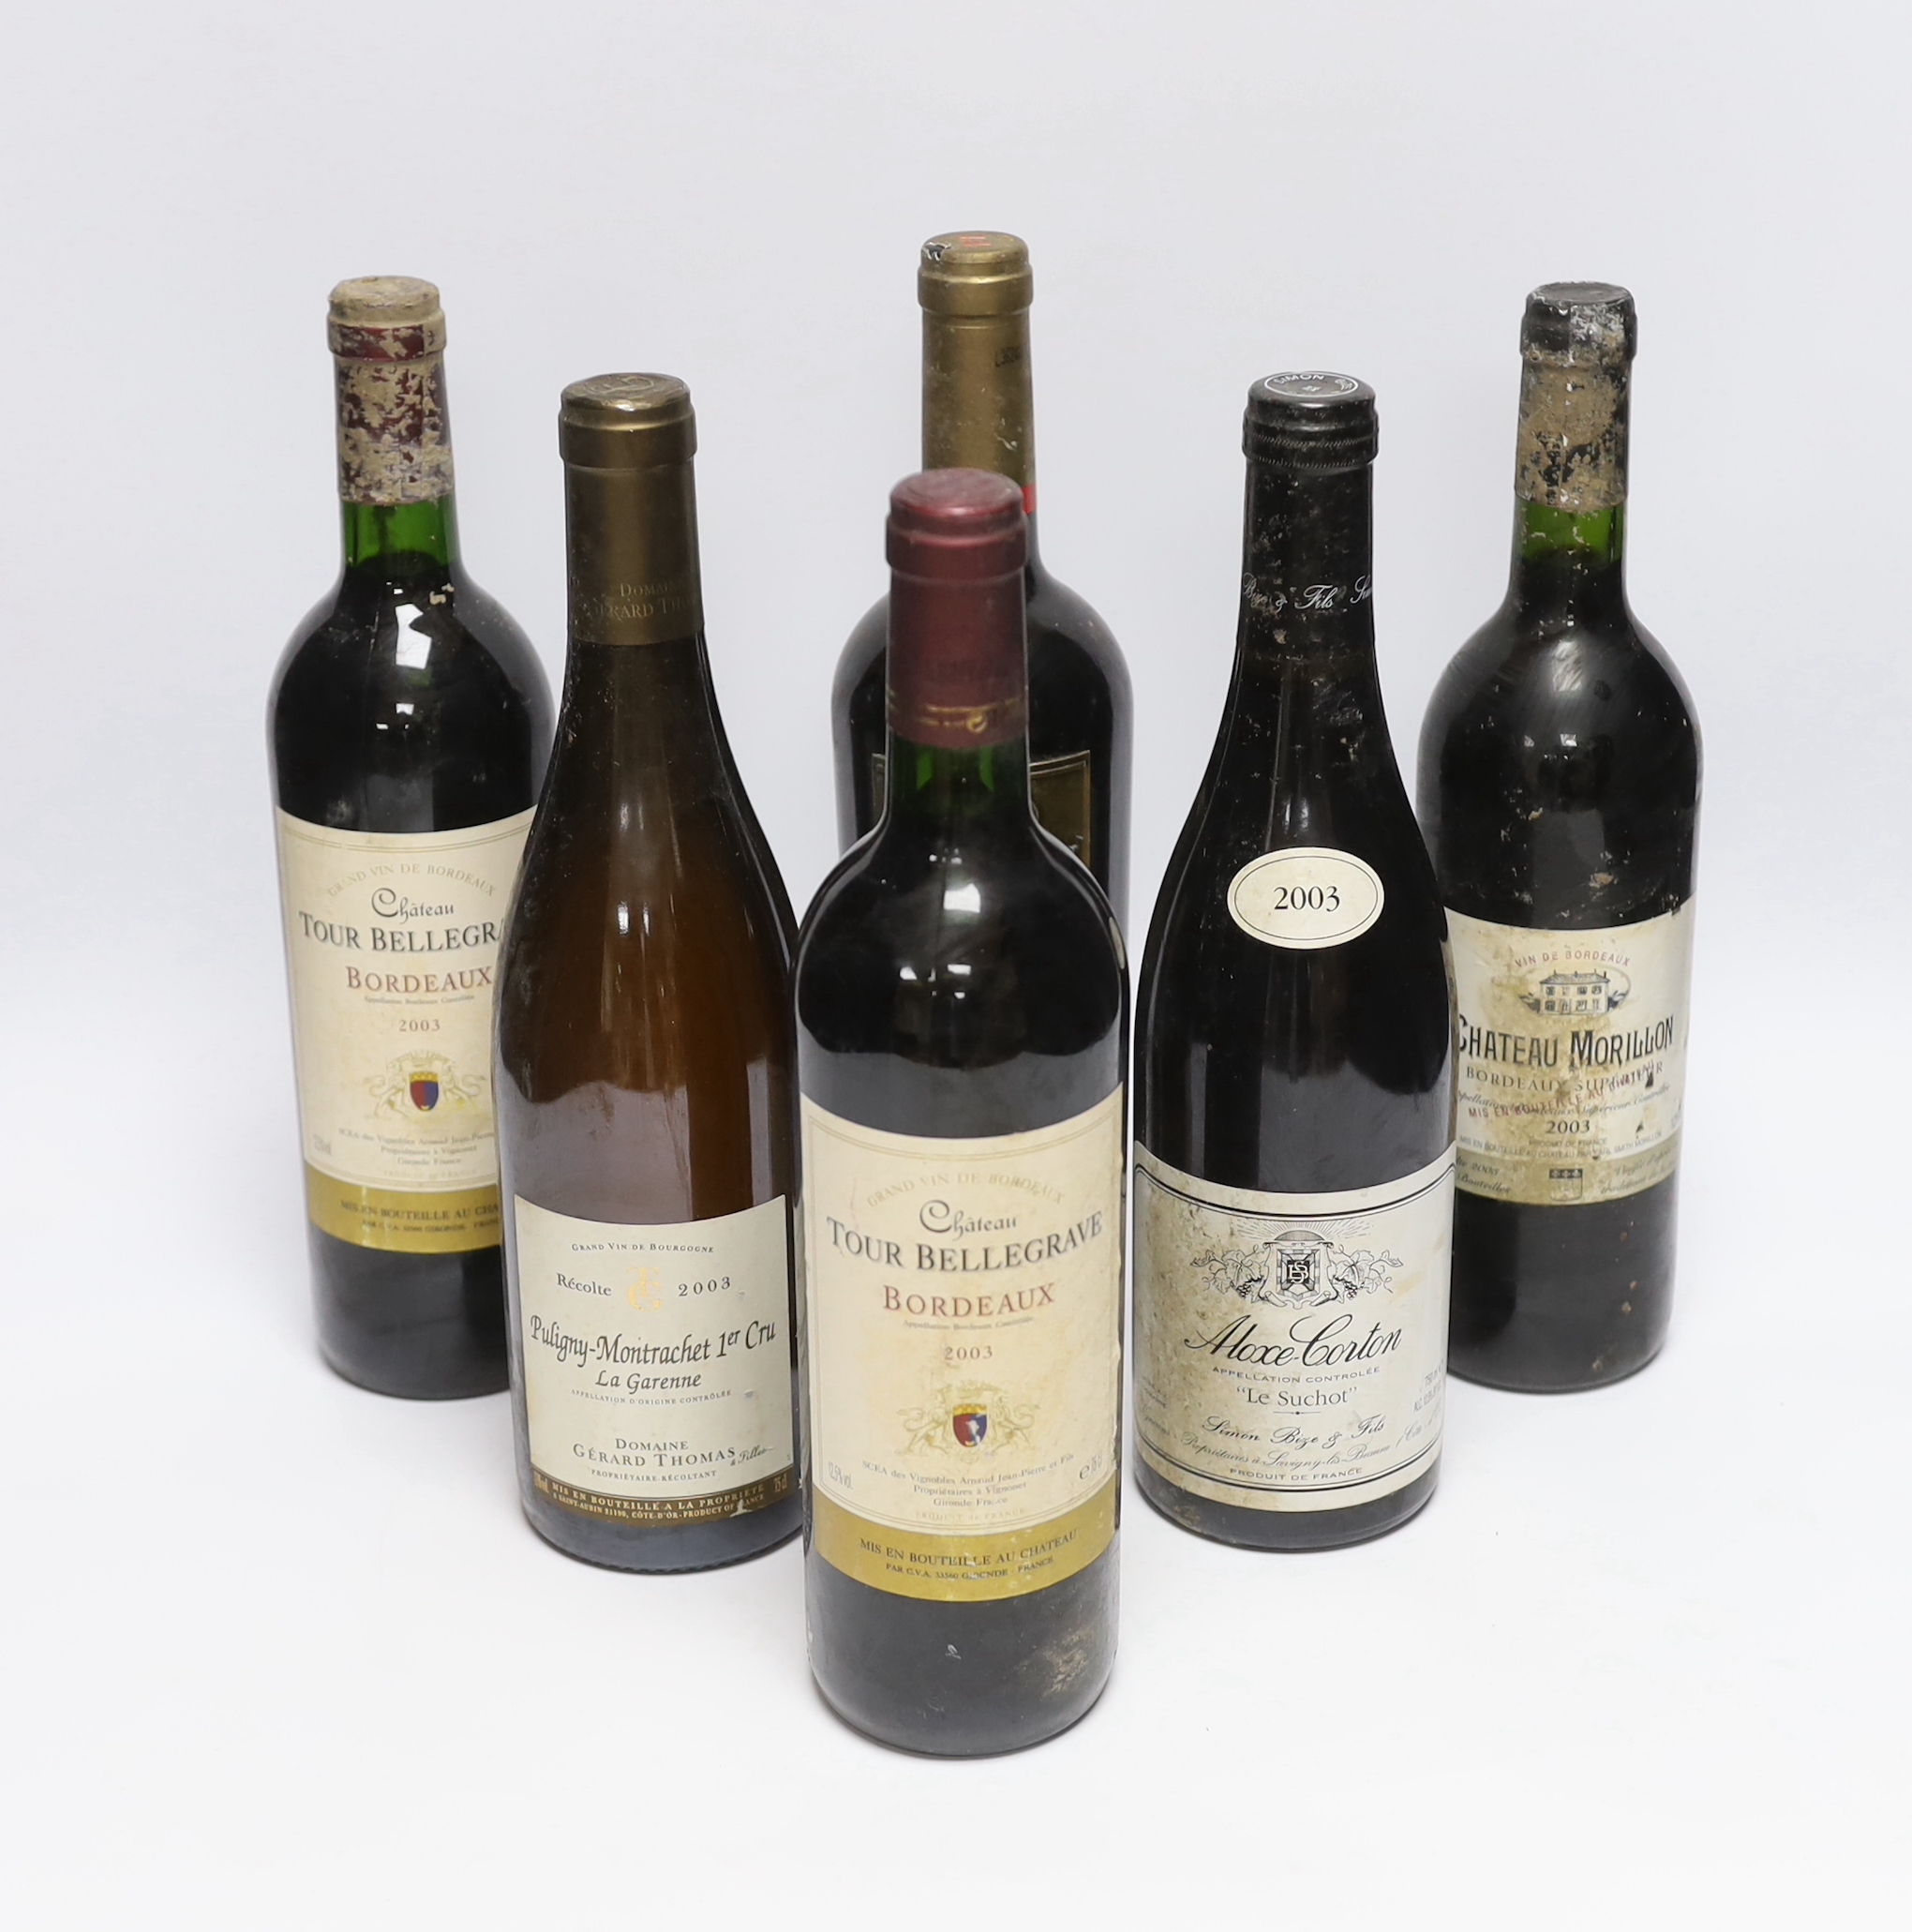 Six bottles of red wine - two bottles of Chateau Tour Bellegrave 2003, a bottle of Baron De Ley Rioja, a bottle of Simon Bize Aloxe Corton Le Suchot 2003, a bottle of Gérard Thomas Puligny-Montrachet La Garenne 2003 and